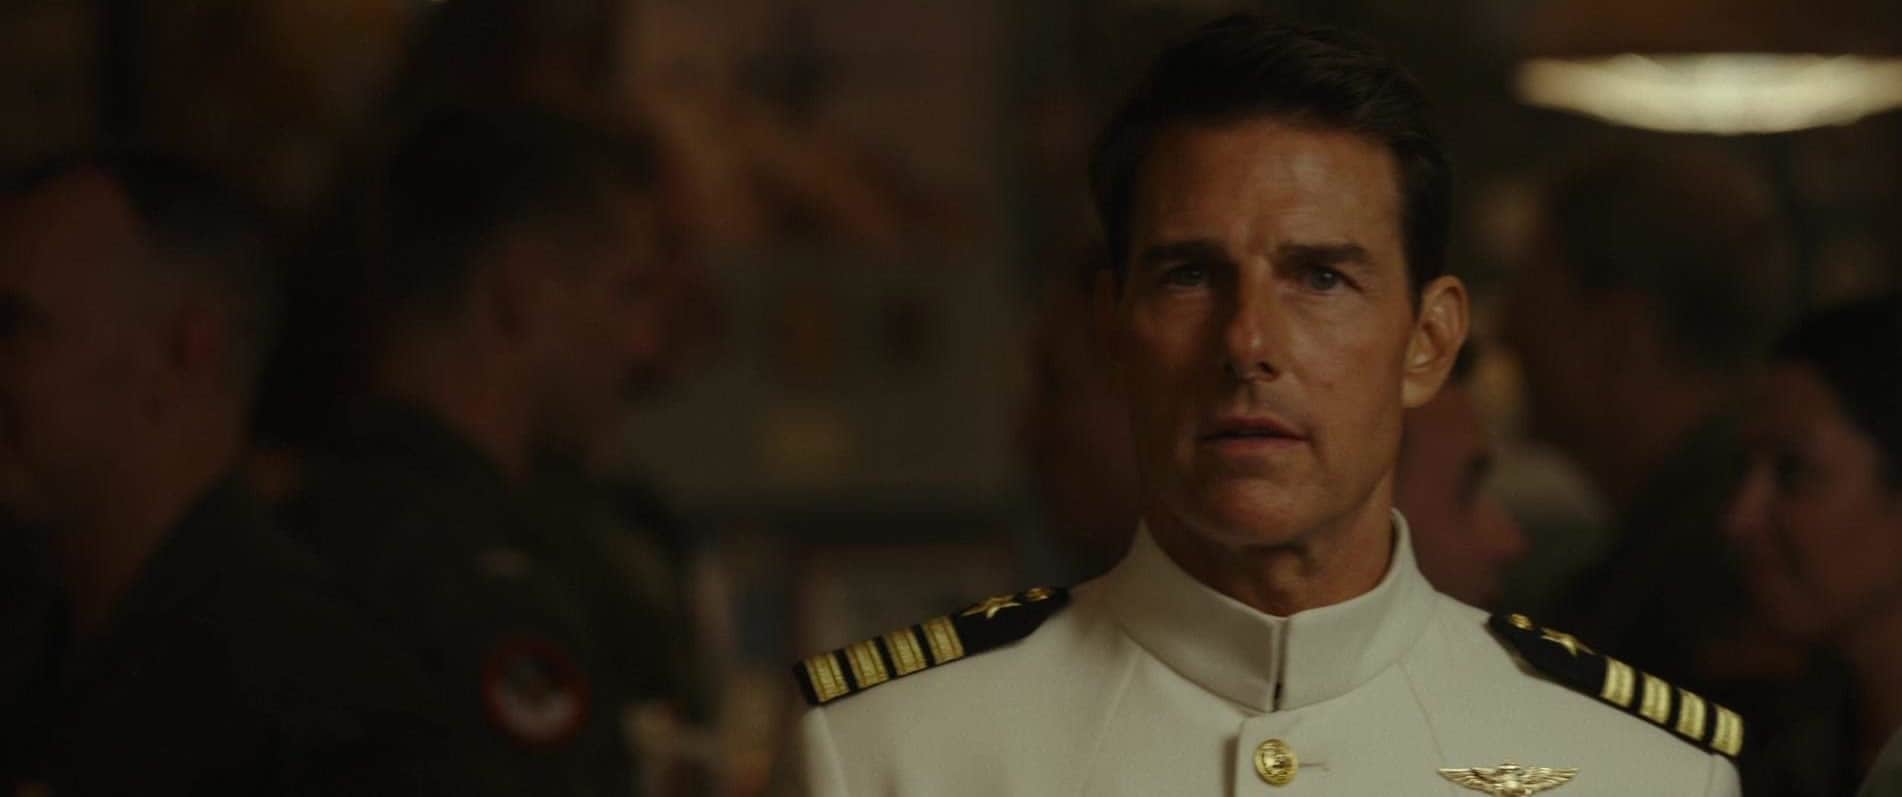 Capt. Pete ‘Maverick’ Mitchell wearing service dress whites